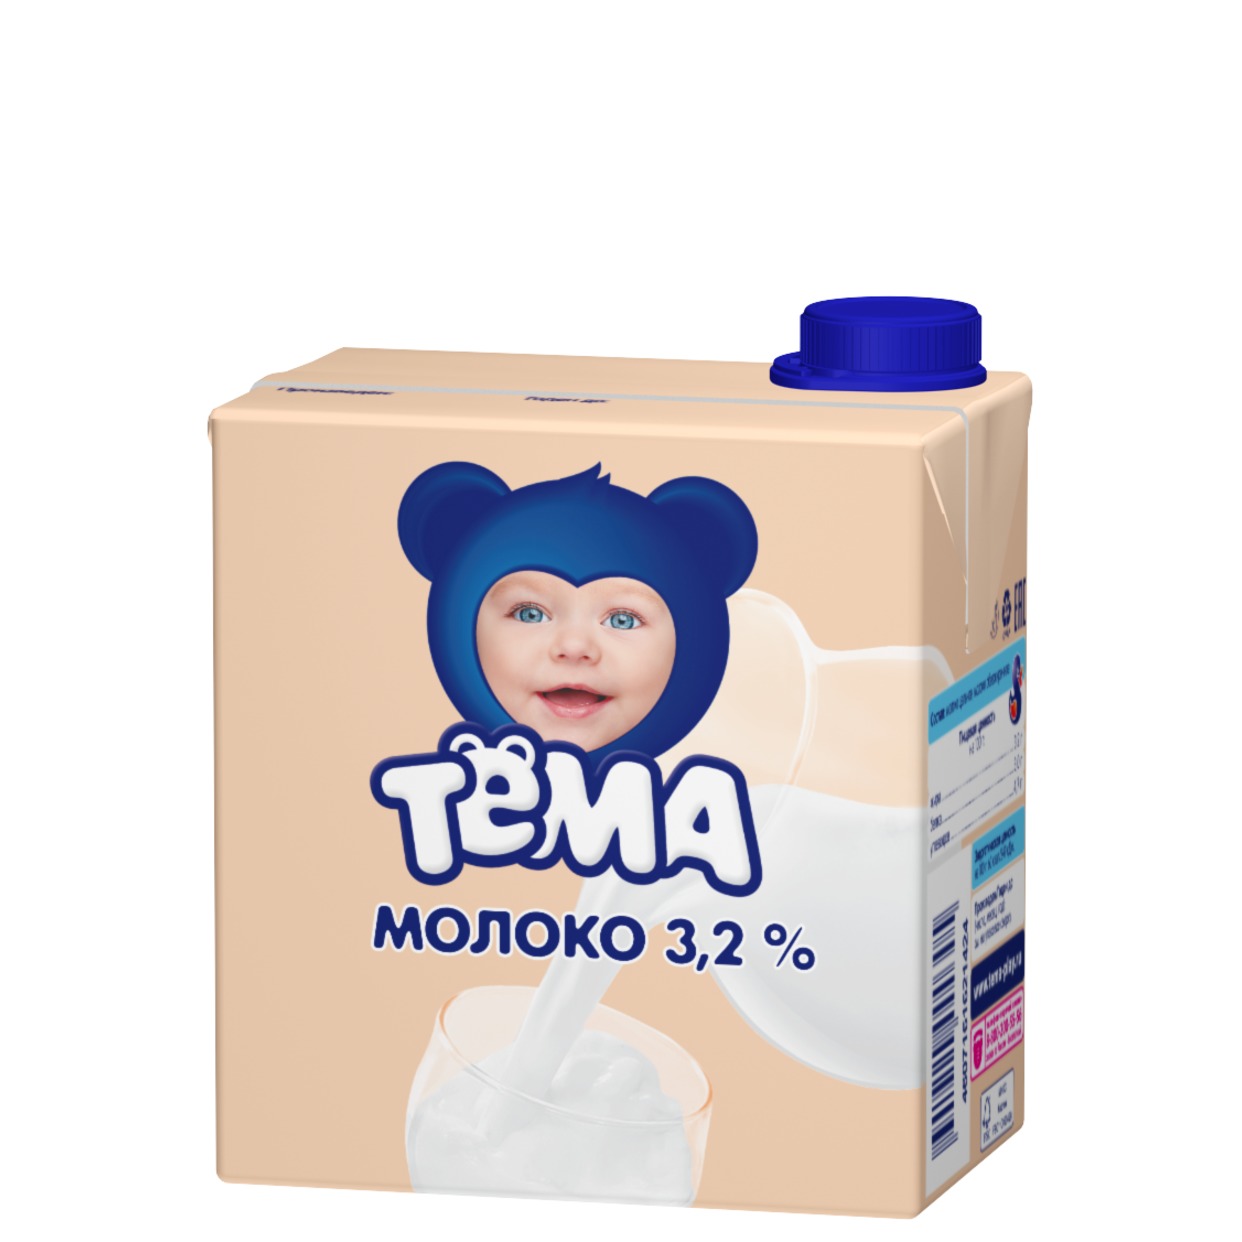 ТЕМА Молоко ул/паст детское 3,2% 500мл